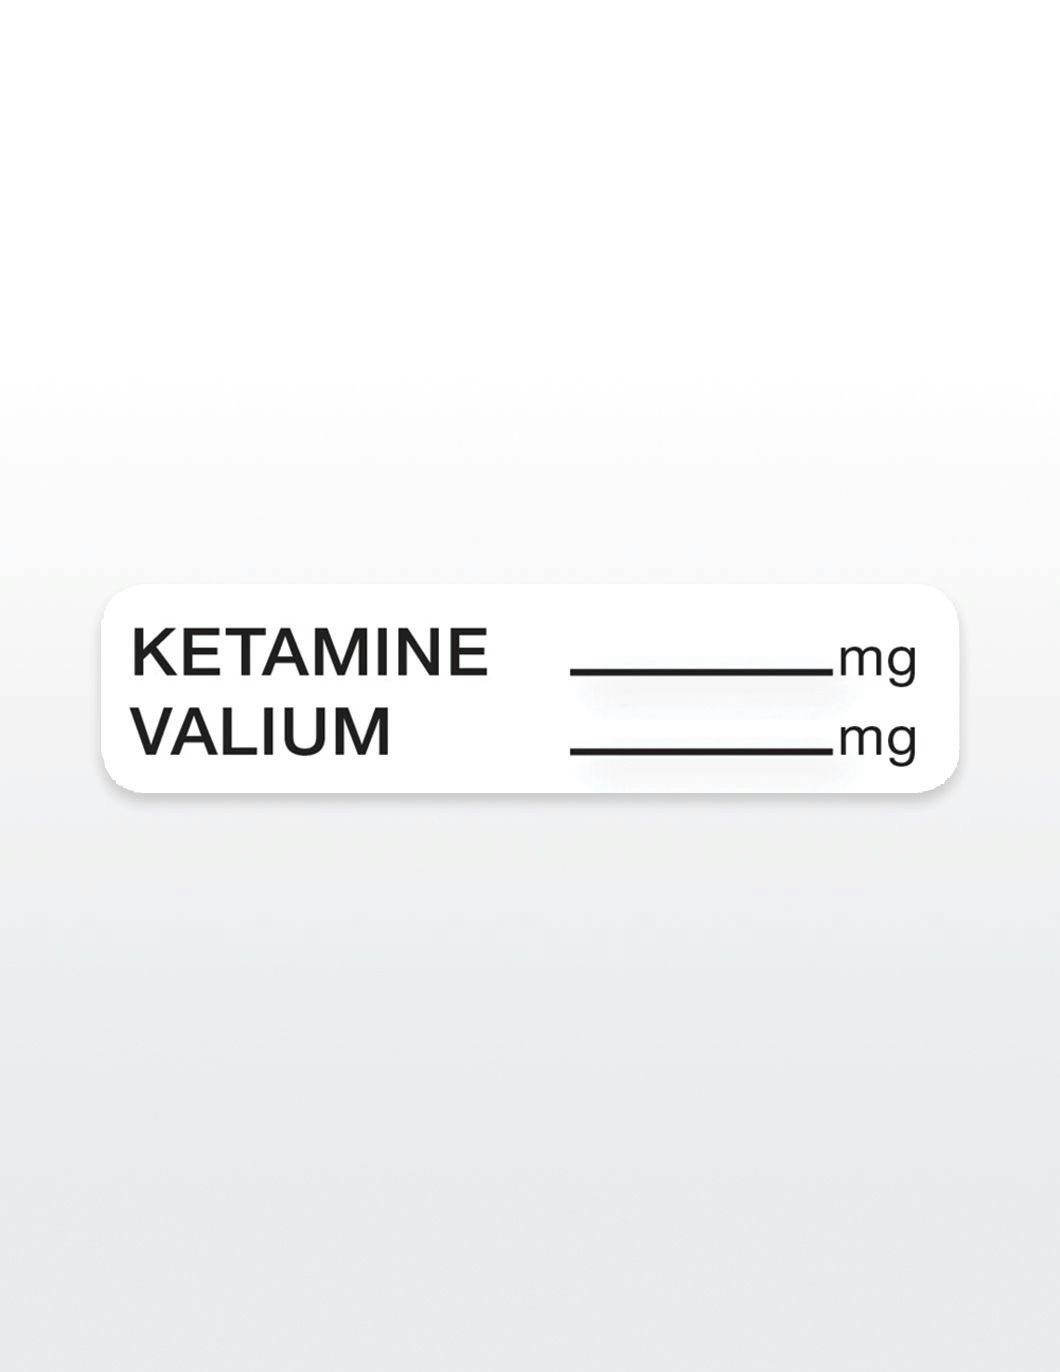 ketamine-valium-drug-syringe-stickers